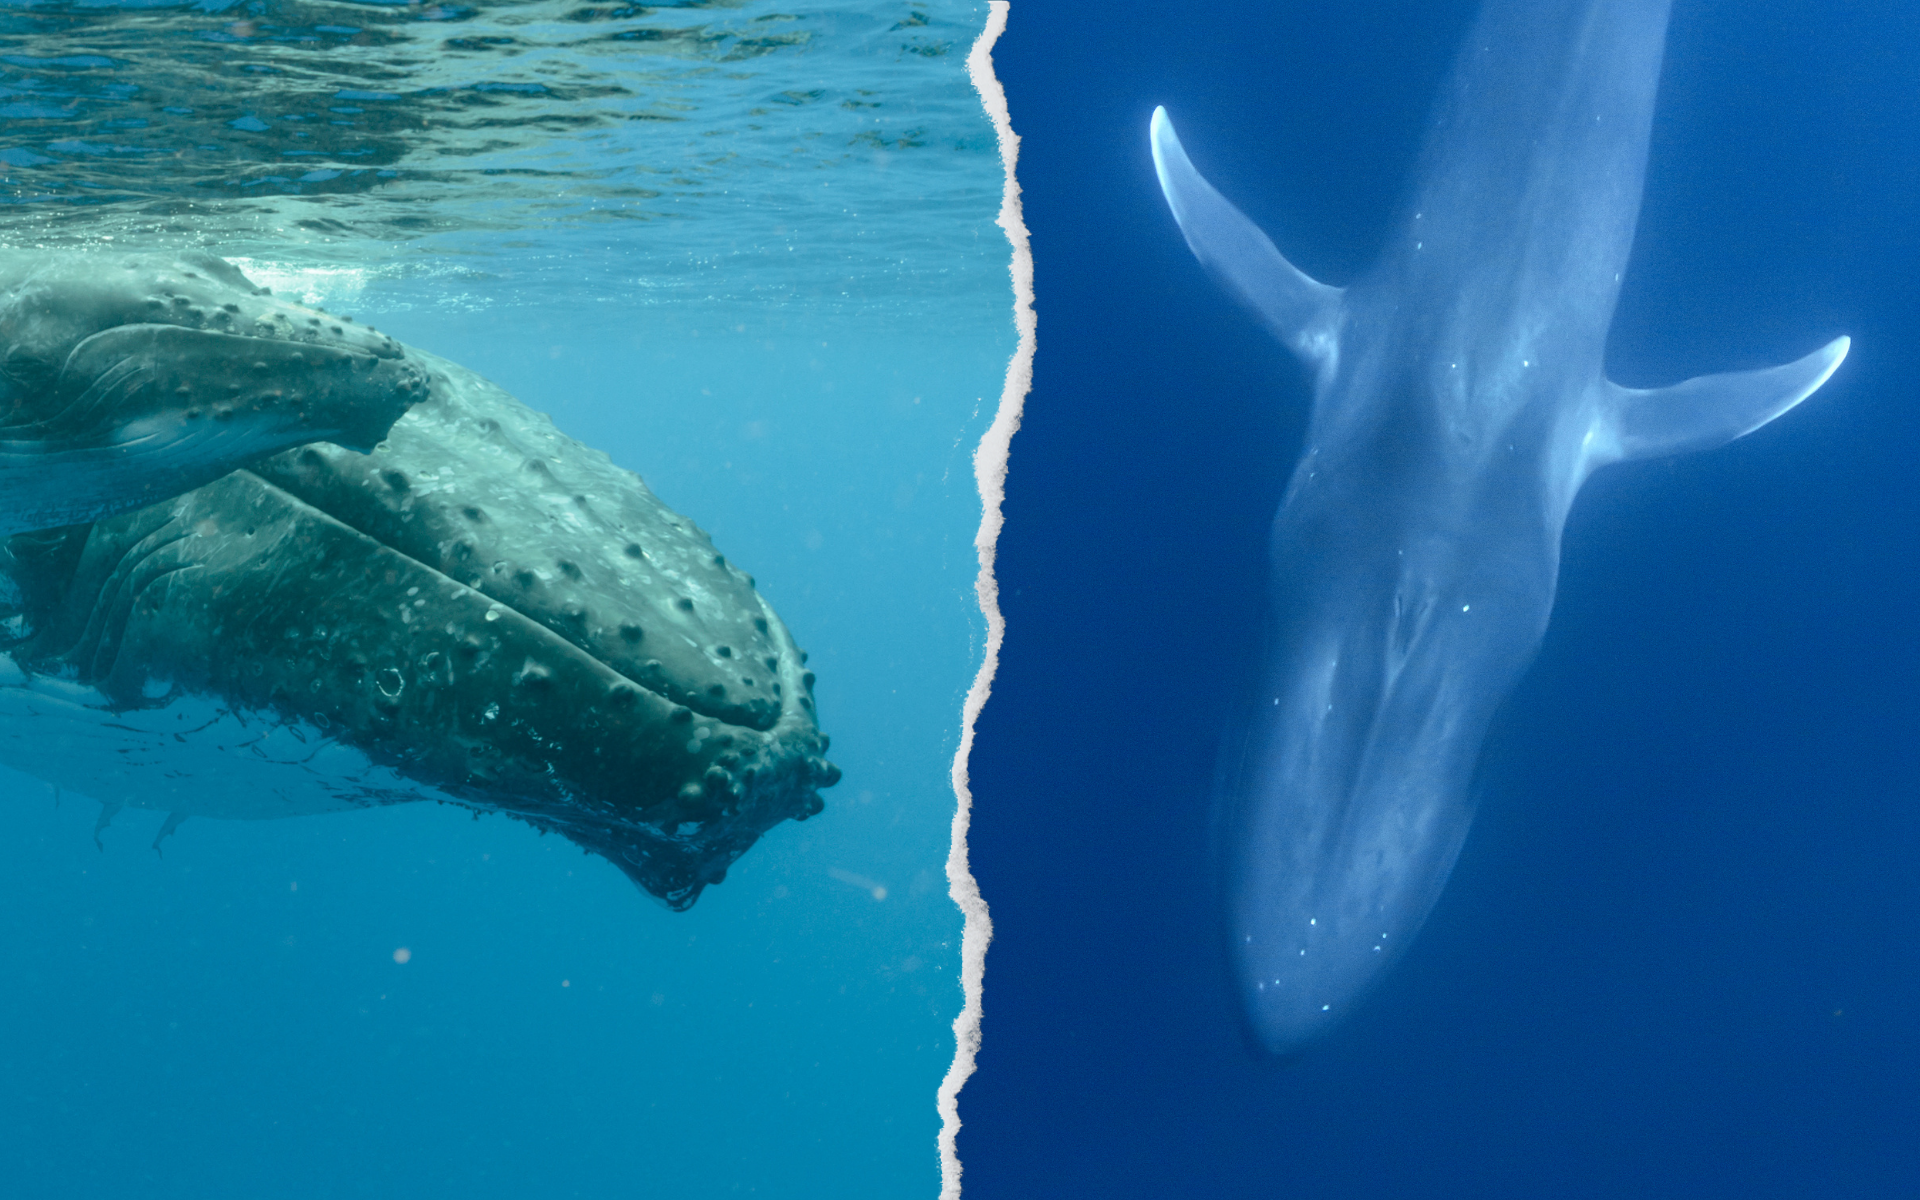 gráfico comparativo entre la apariencia de una ballena jorobada y una azul. La primera tiene una serie de protuberancias, la segunda es completamente lisa.